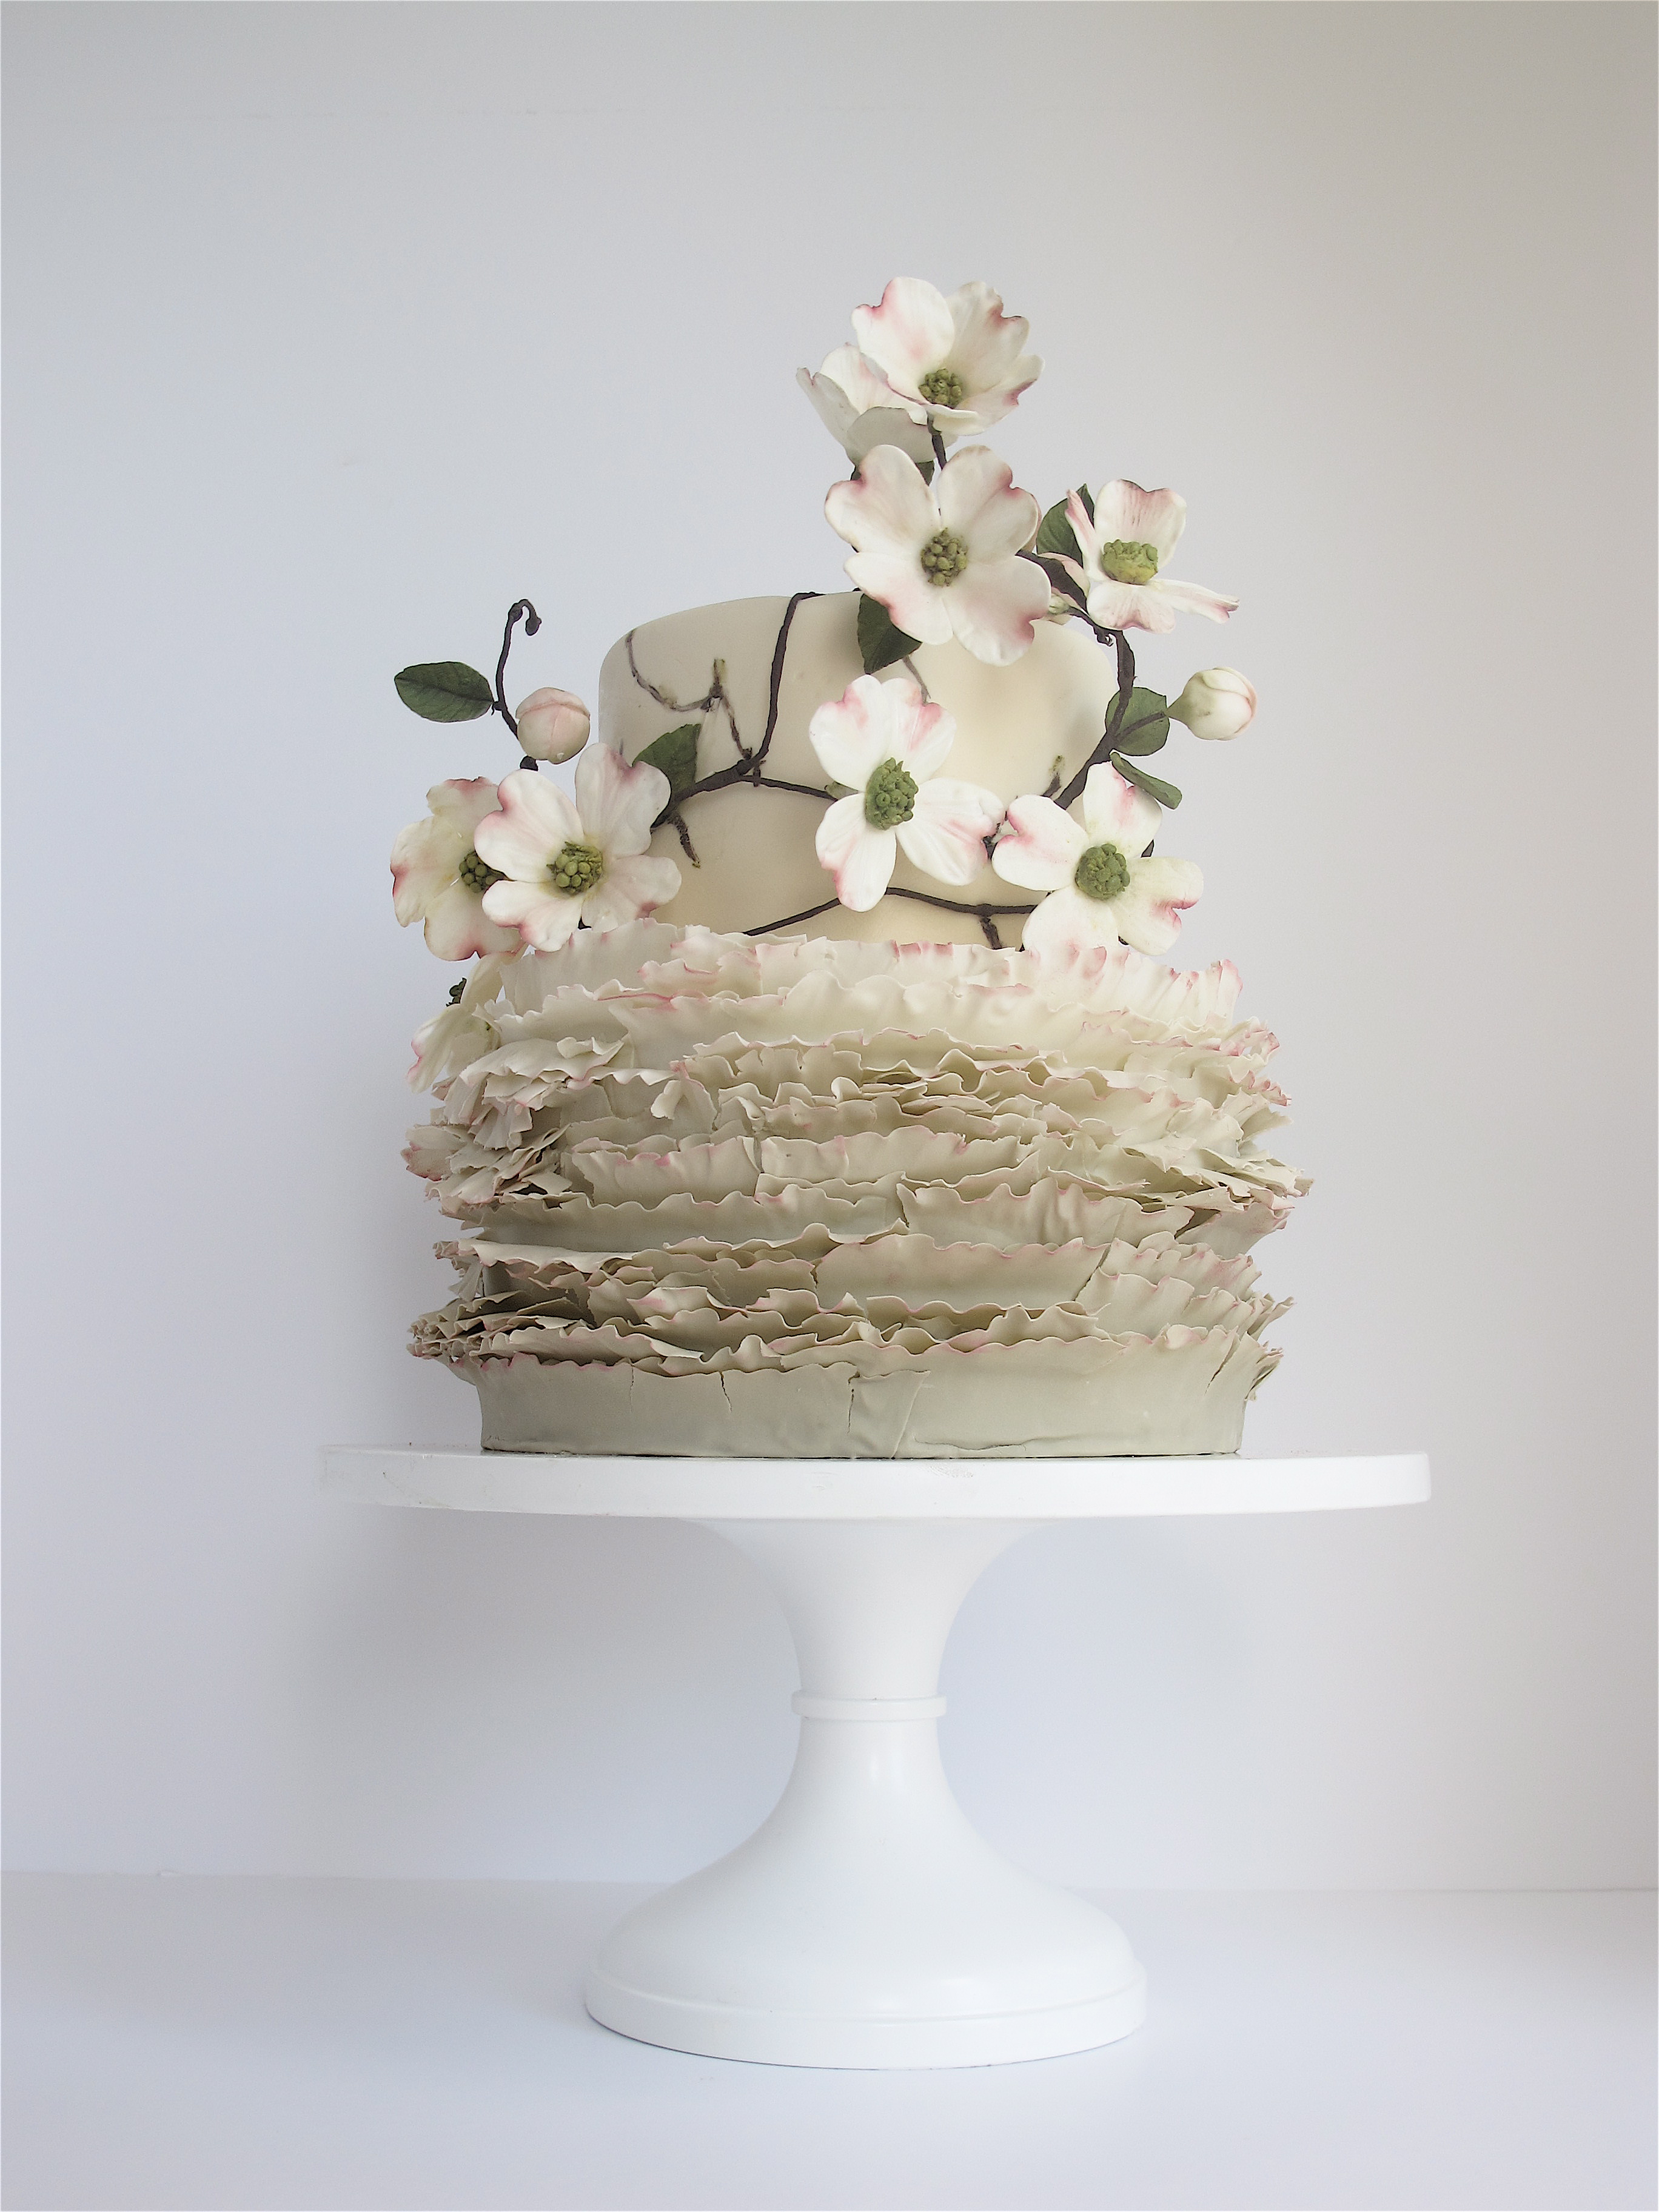 Hãy cùng bước vào thế giới bánh kẹo ngọt ngào của nghệ nhân Maggie Austin - tác giả của vô vàn những tuyệt phẩm bánh cưới đẹp không thể rời mắt!